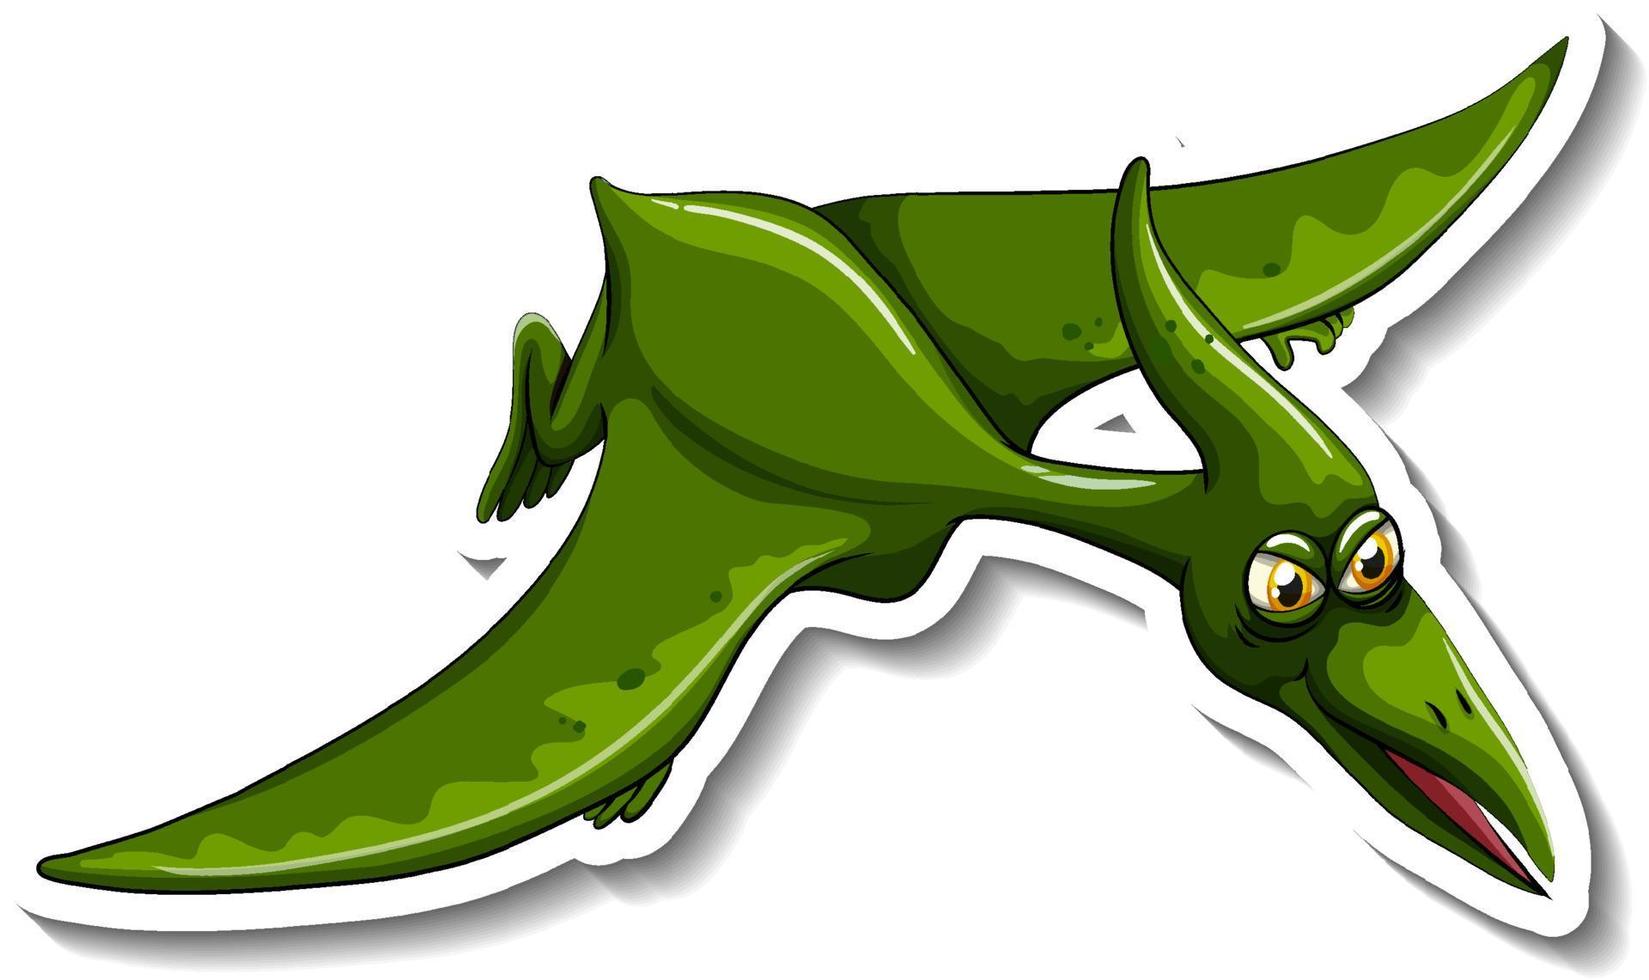 Pteranodon dinosaur cartoon character sticker vector